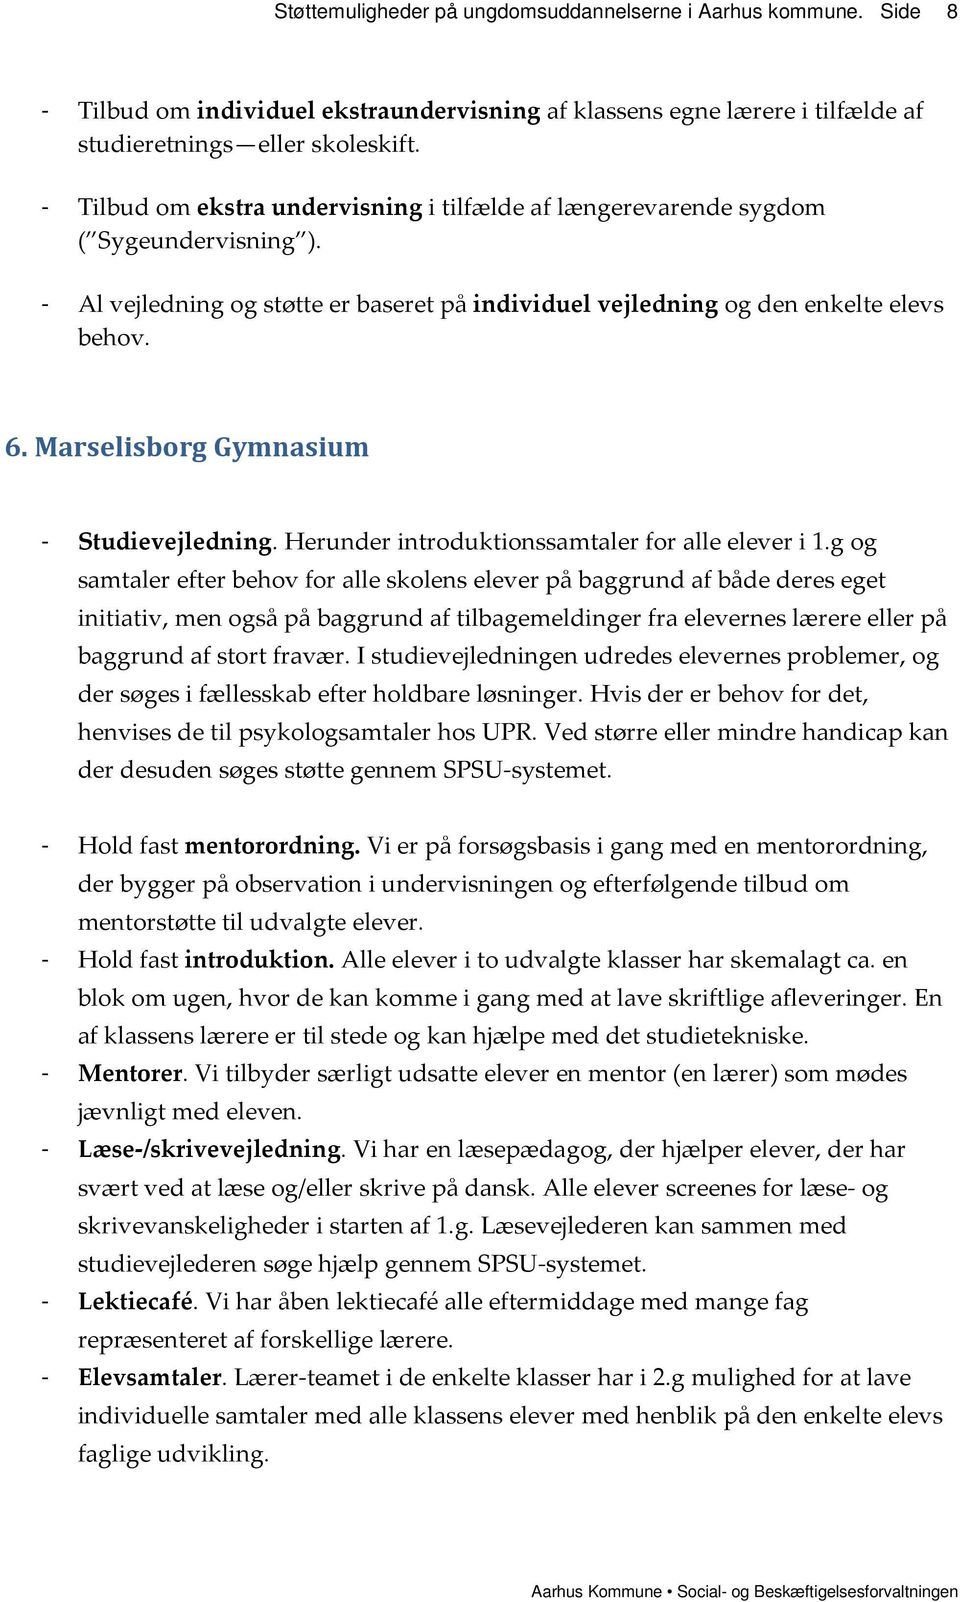 Marselisborg Gymnasium - Studievejledning. Herunder introduktionssamtaler for alle elever i 1.